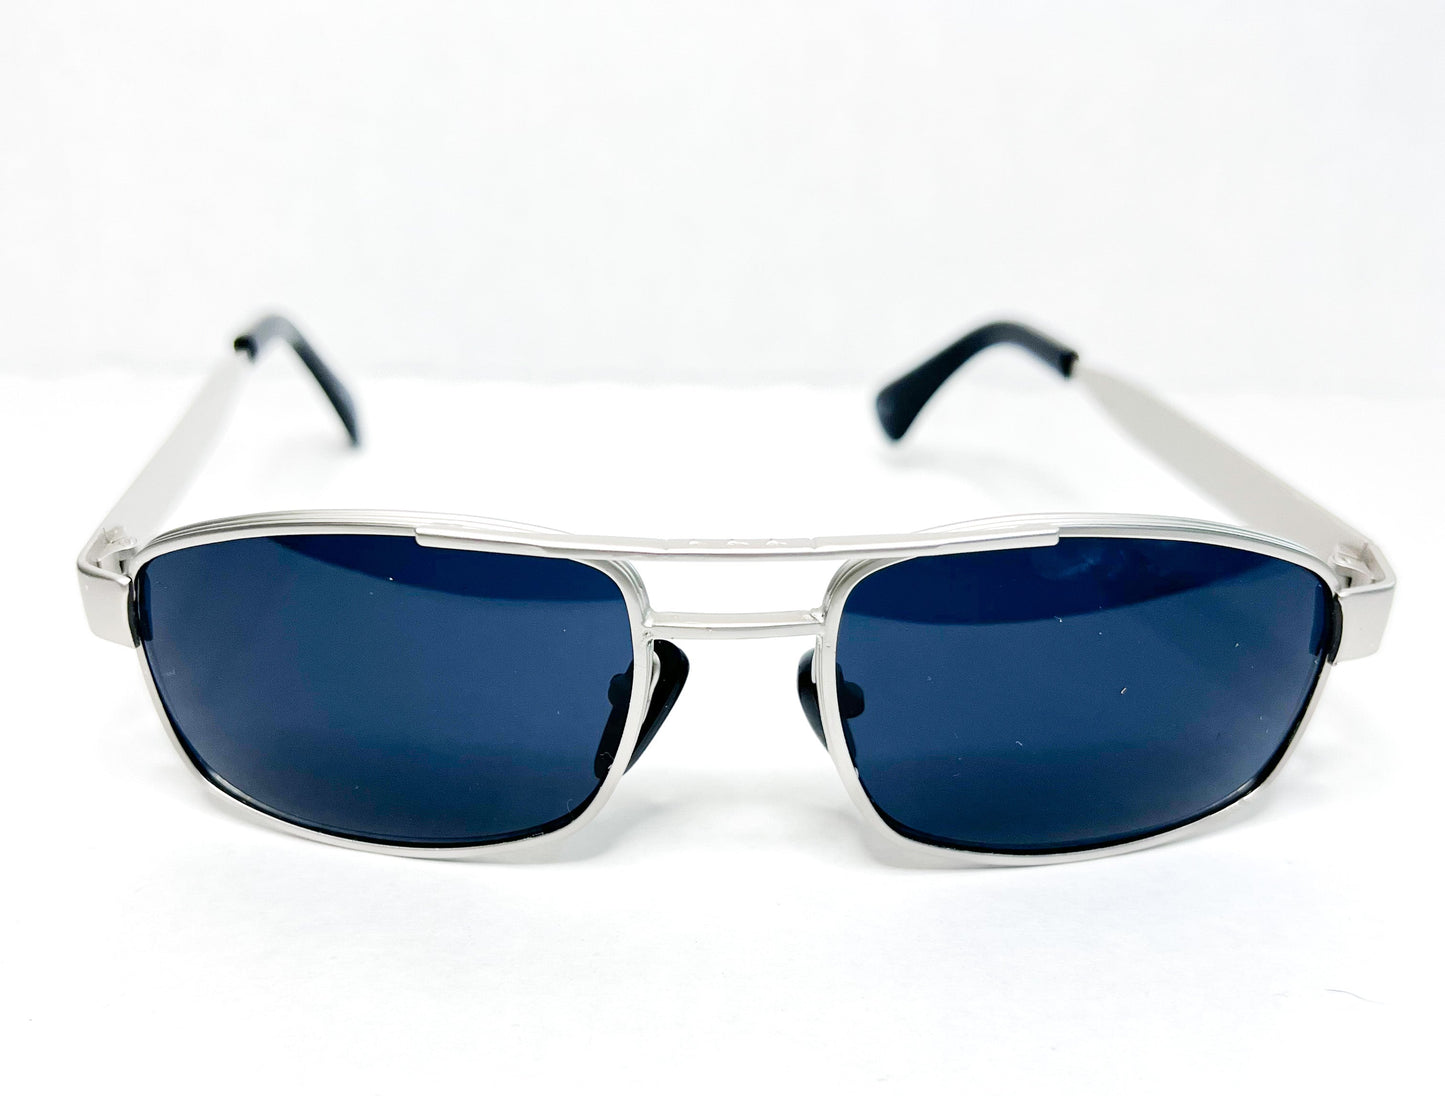 SX 90s square chrome sunglasses with dark blue lens